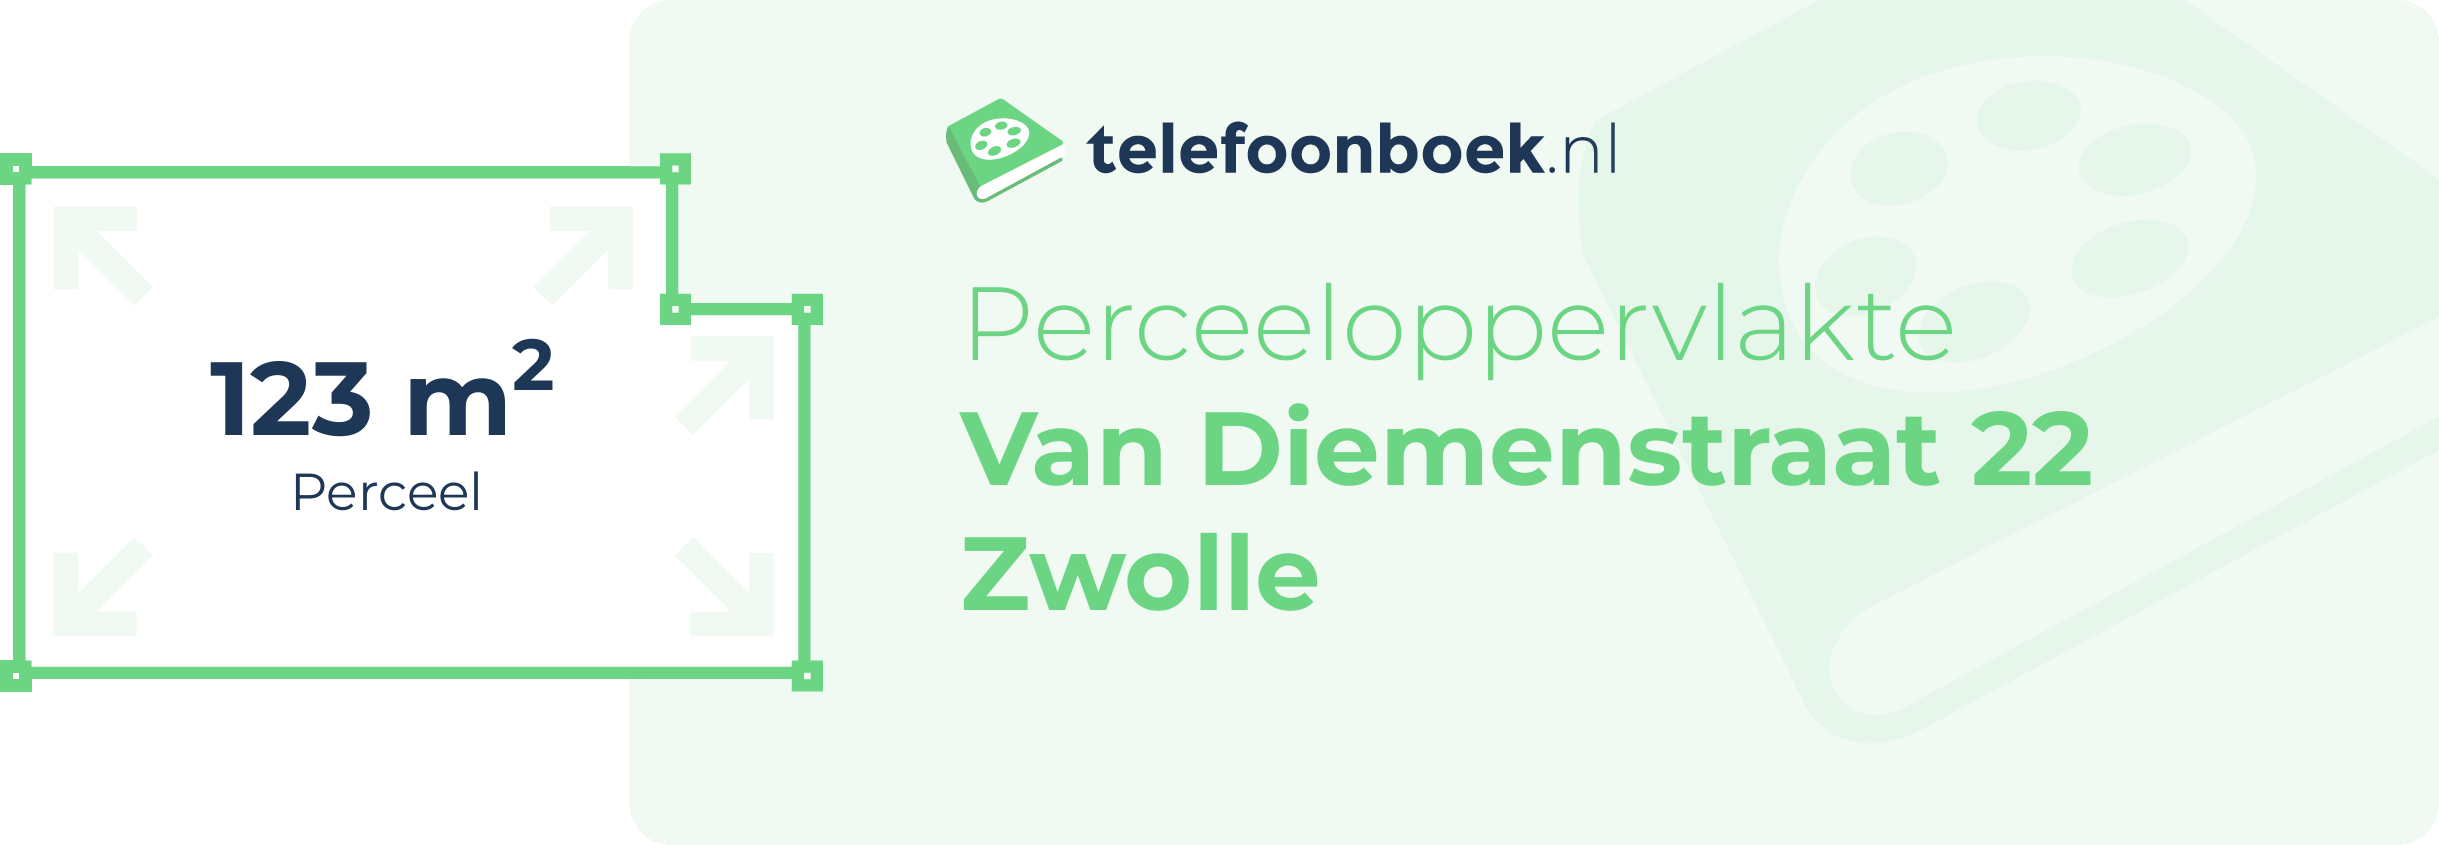 Perceeloppervlakte Van Diemenstraat 22 Zwolle